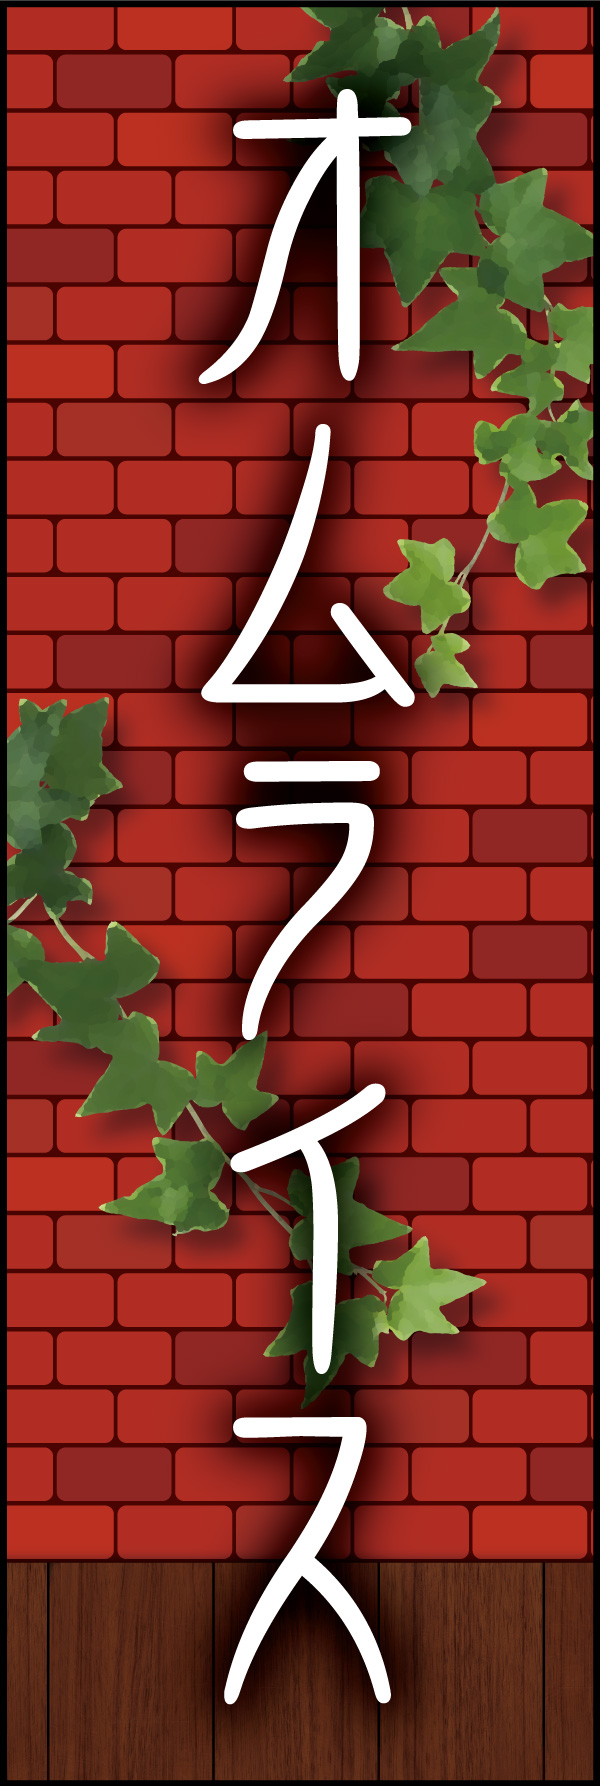 オムライス 05 「オムライス」ののぼりです。赤煉瓦をバックに、懐かしい洋食屋さんをイメージしてデザインしました。(Y.M)